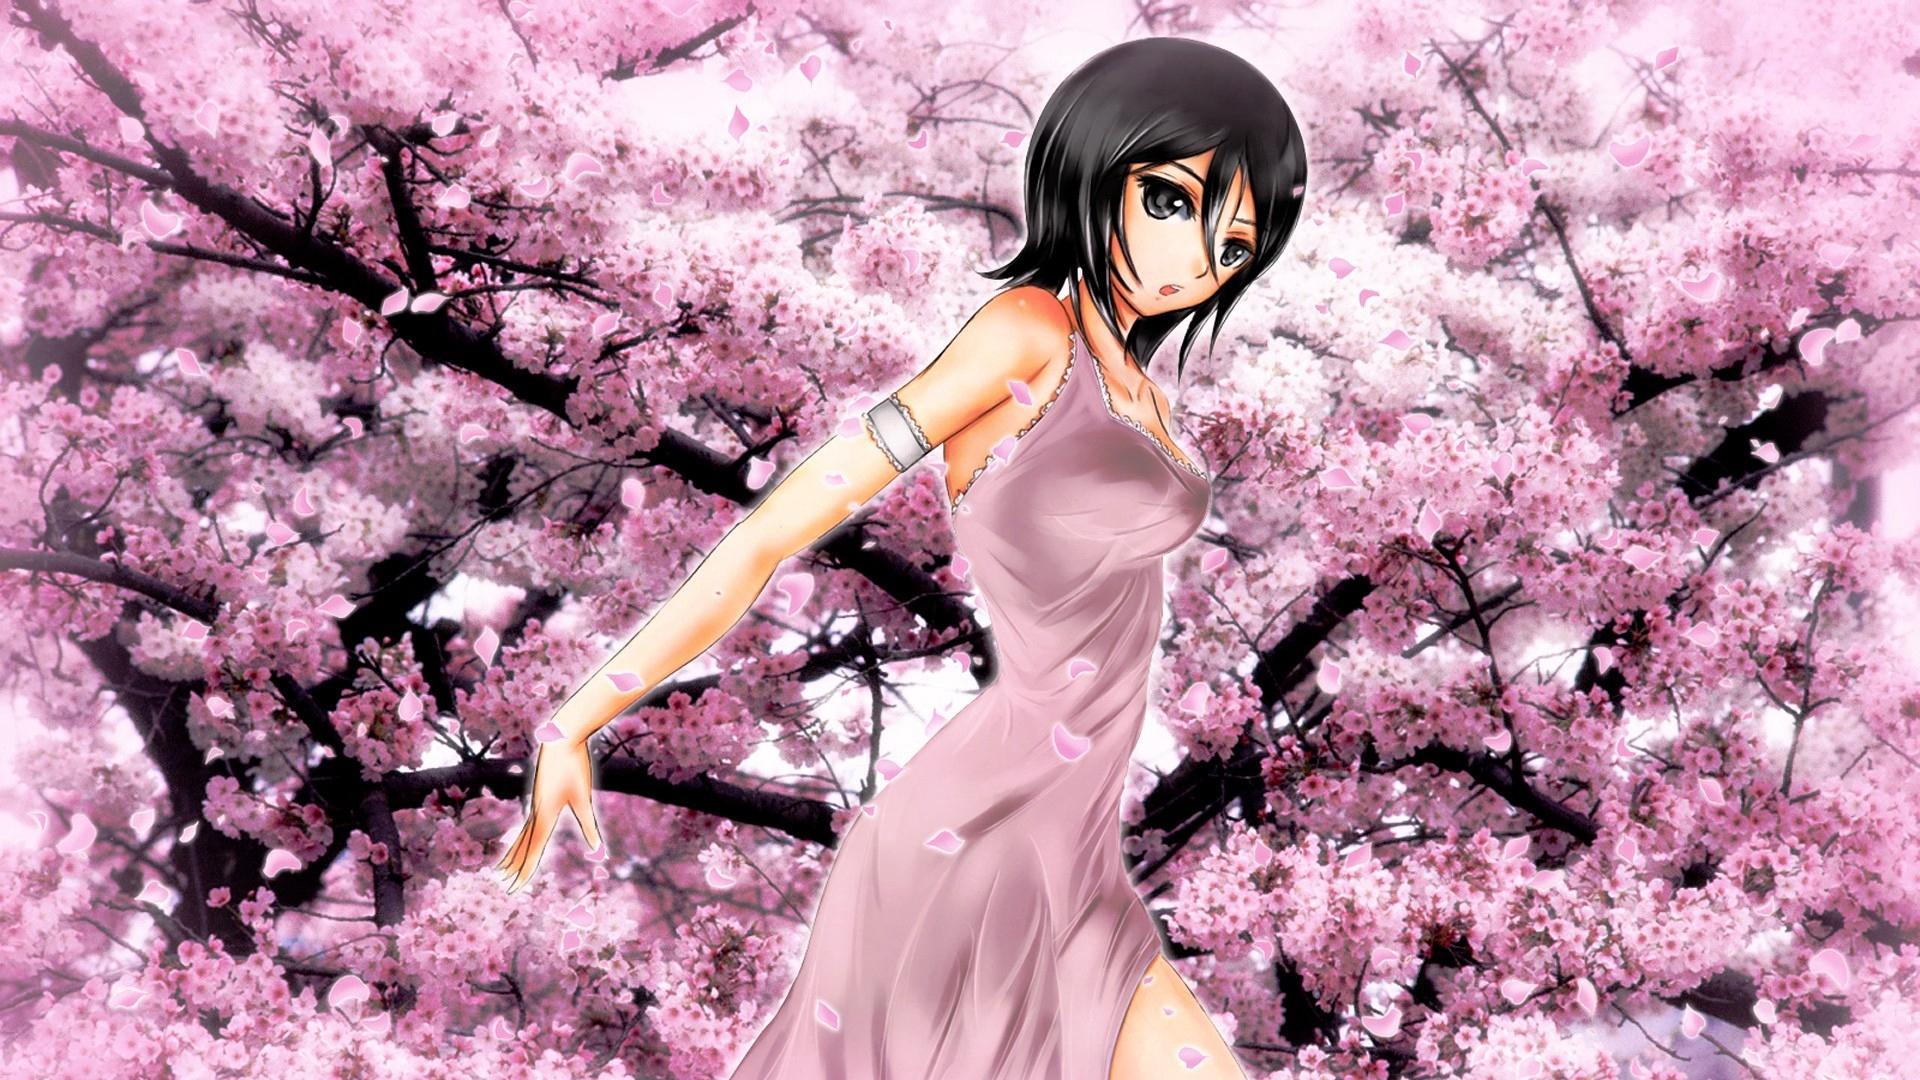 Download wallpaper 1920x1080 anime, girl, garden, flower